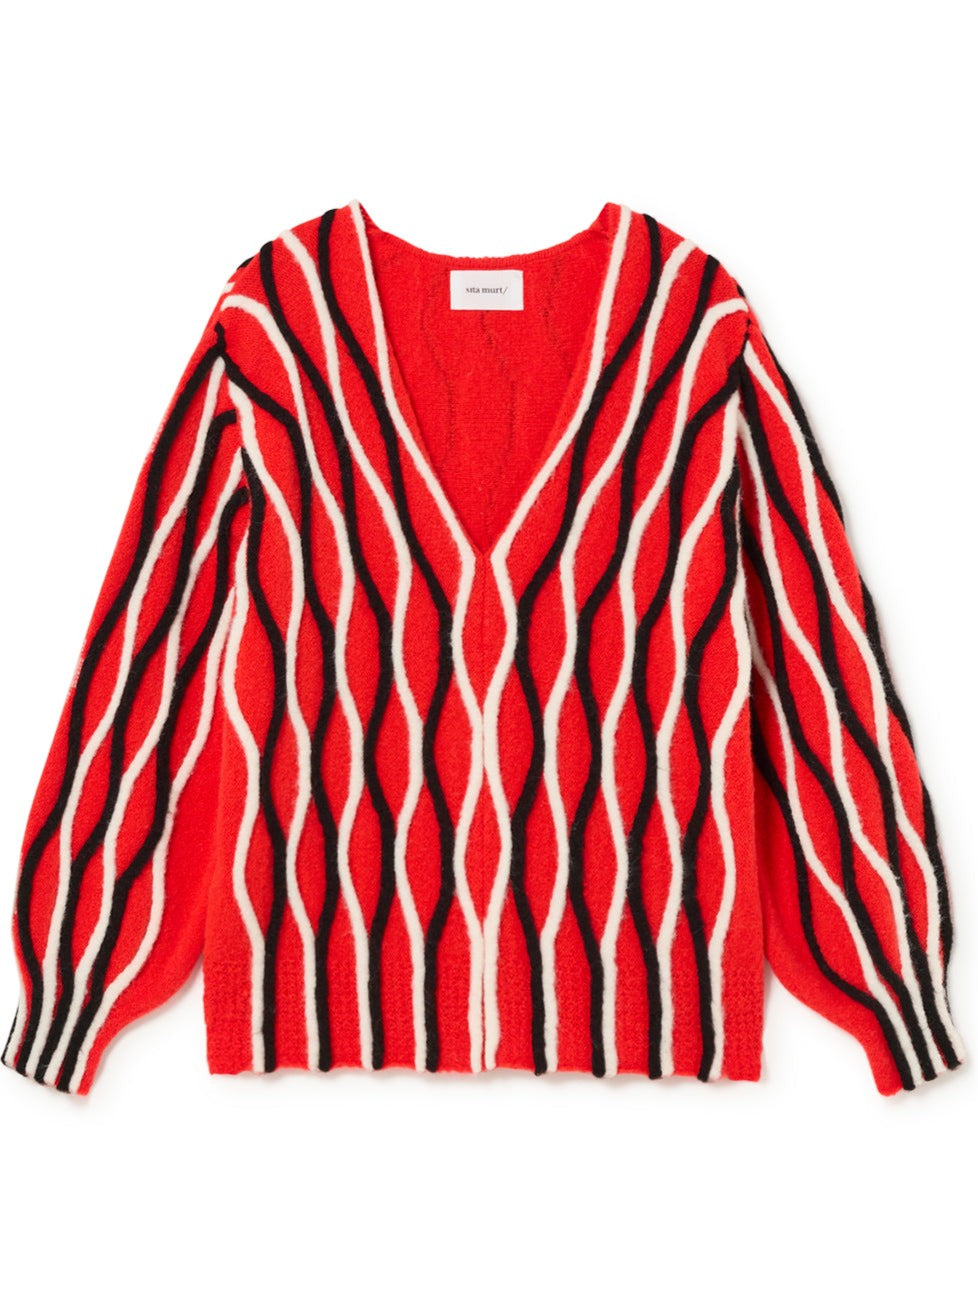 UGA Striped Sweater